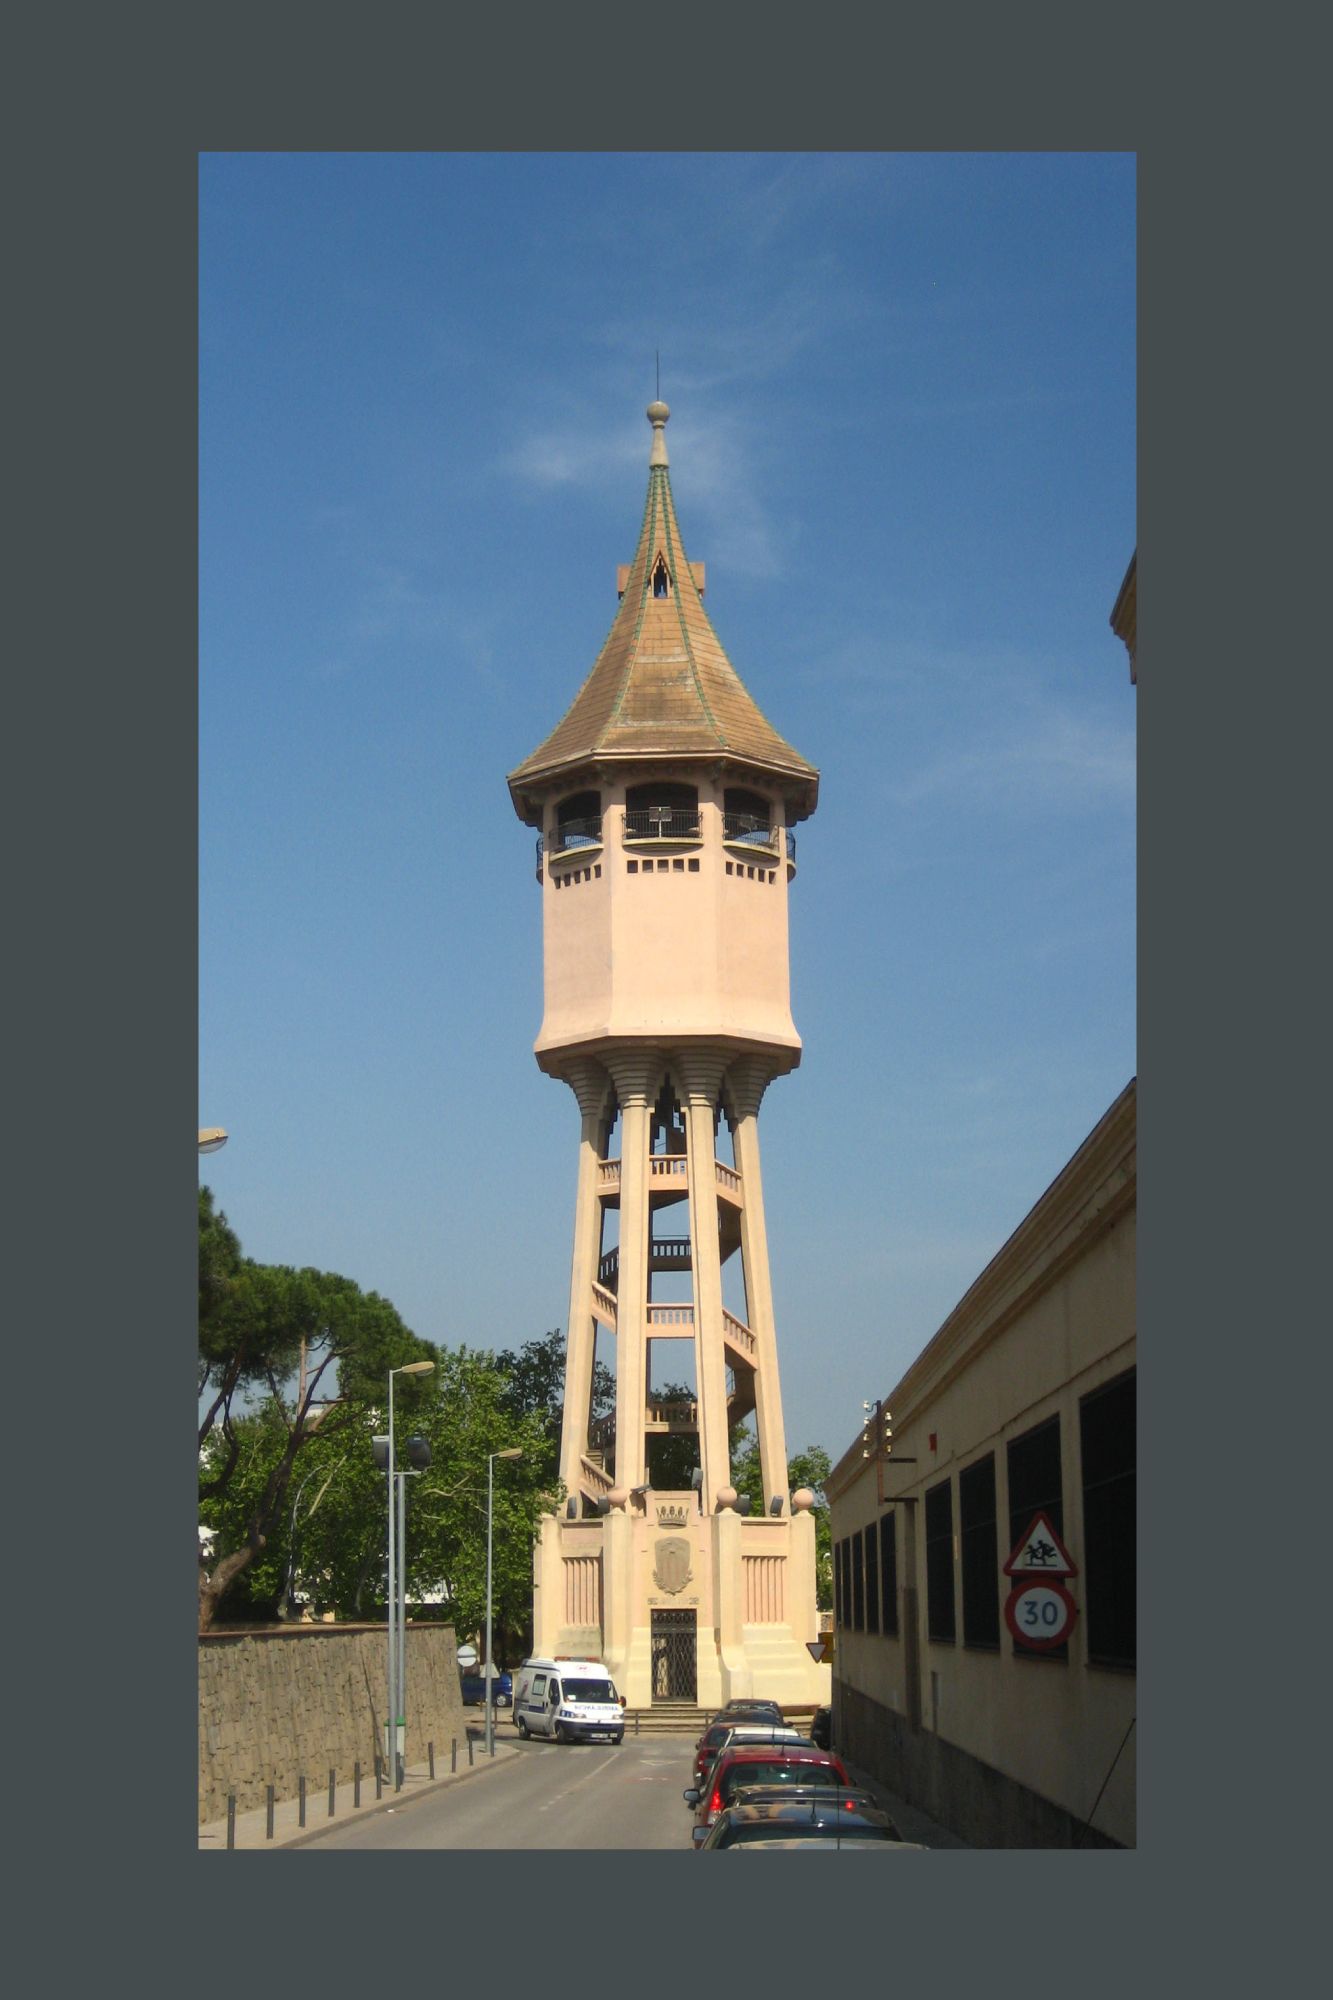 Ideación y diseño del evento del centenario de la Torre de L'aigua de Sabadell